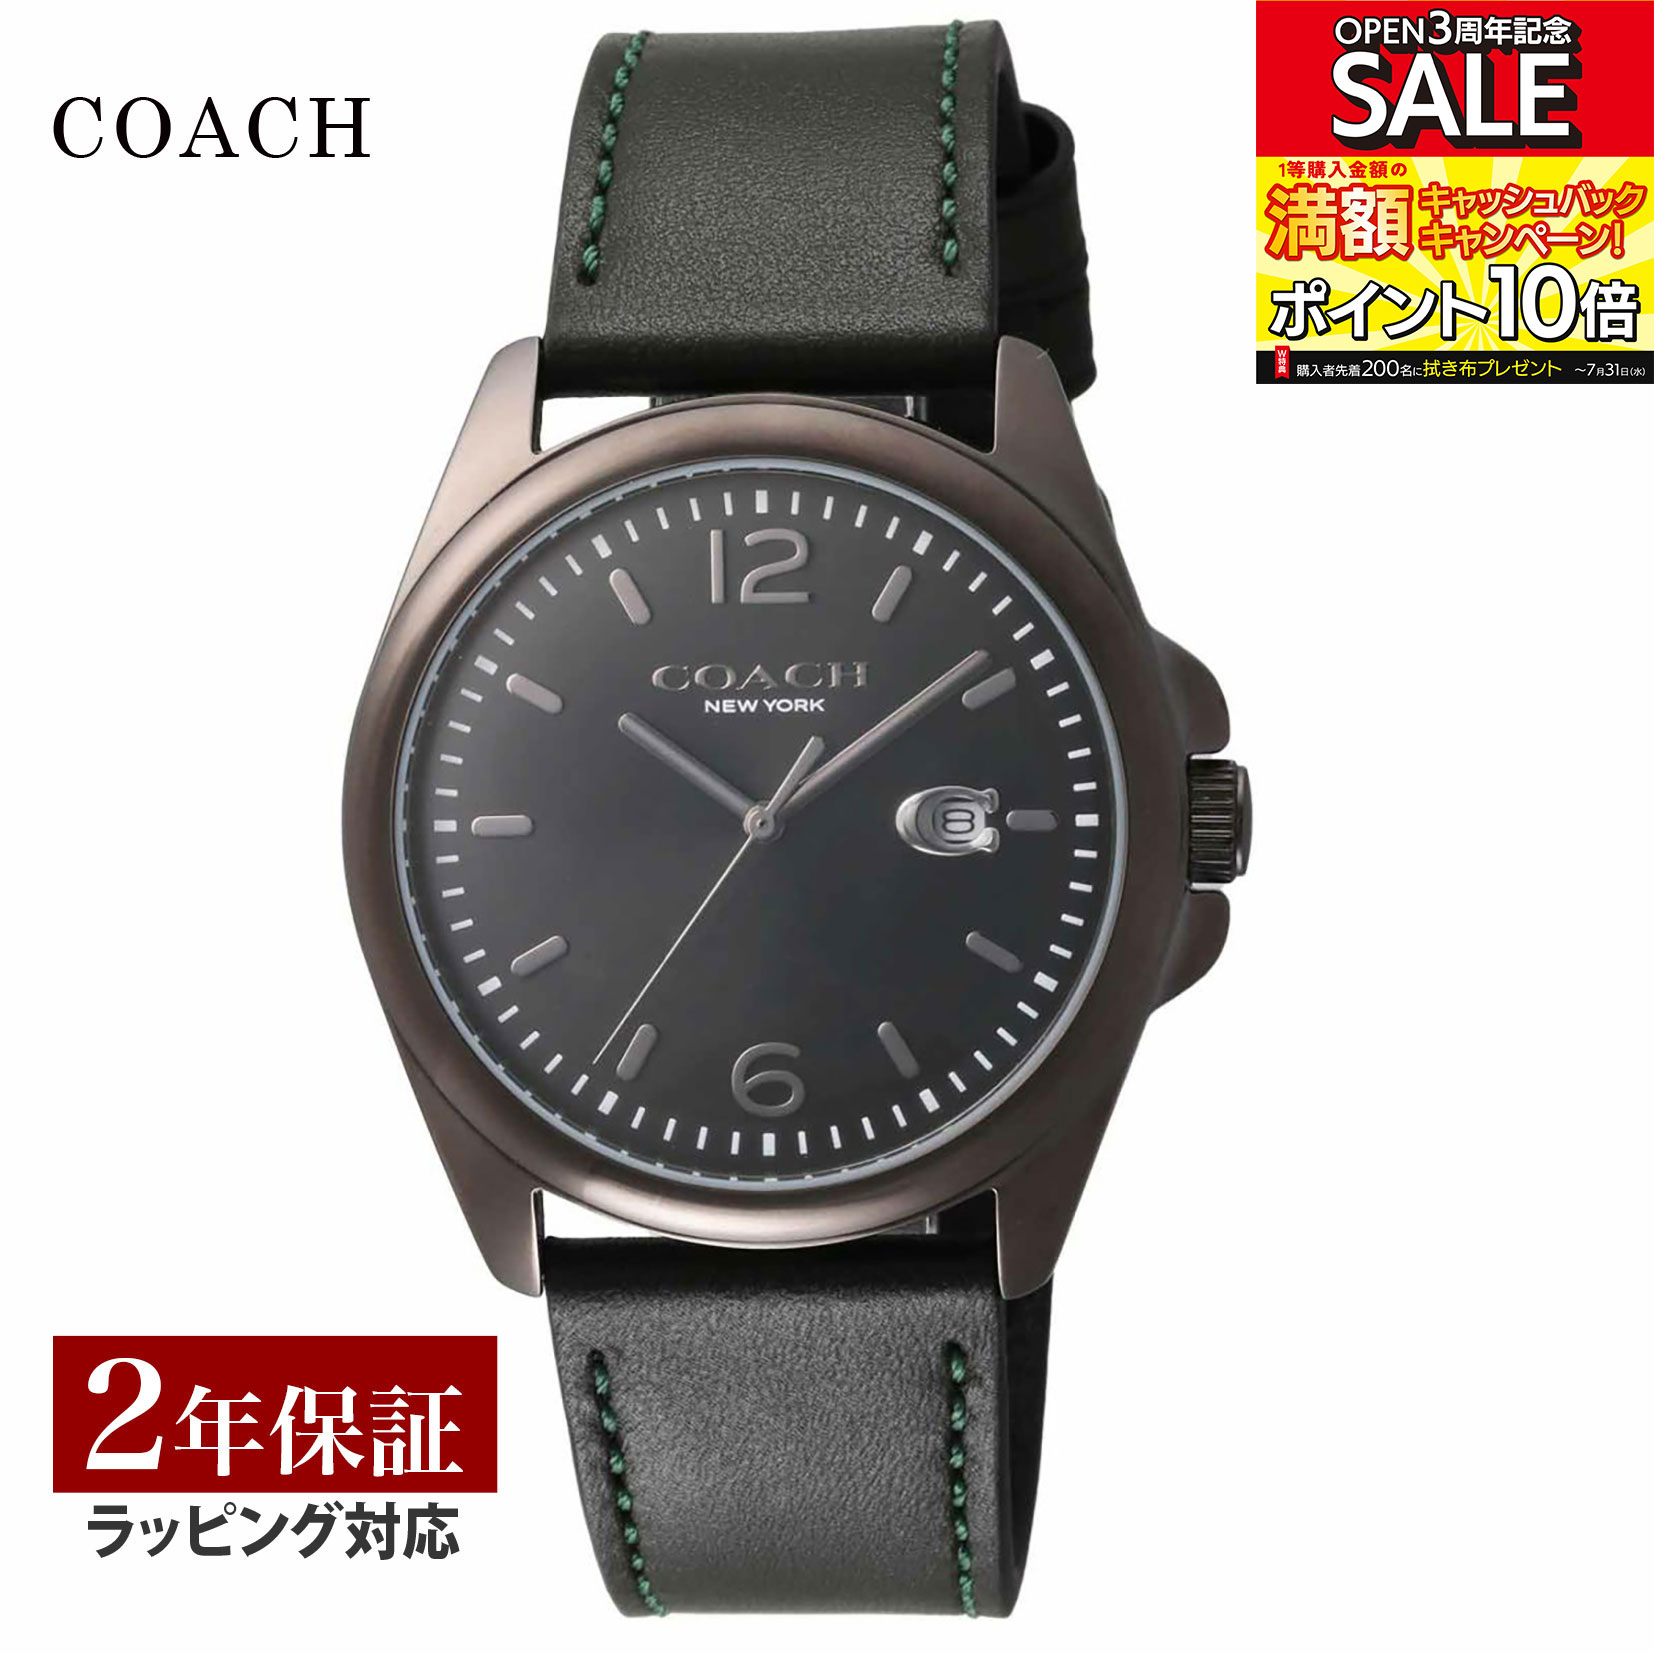 【超目玉】【当店限定】 COACH コーチ GREYSON クォーツ メンズ ブラック 14602609 時計 腕時計 高級腕時計 ブランド